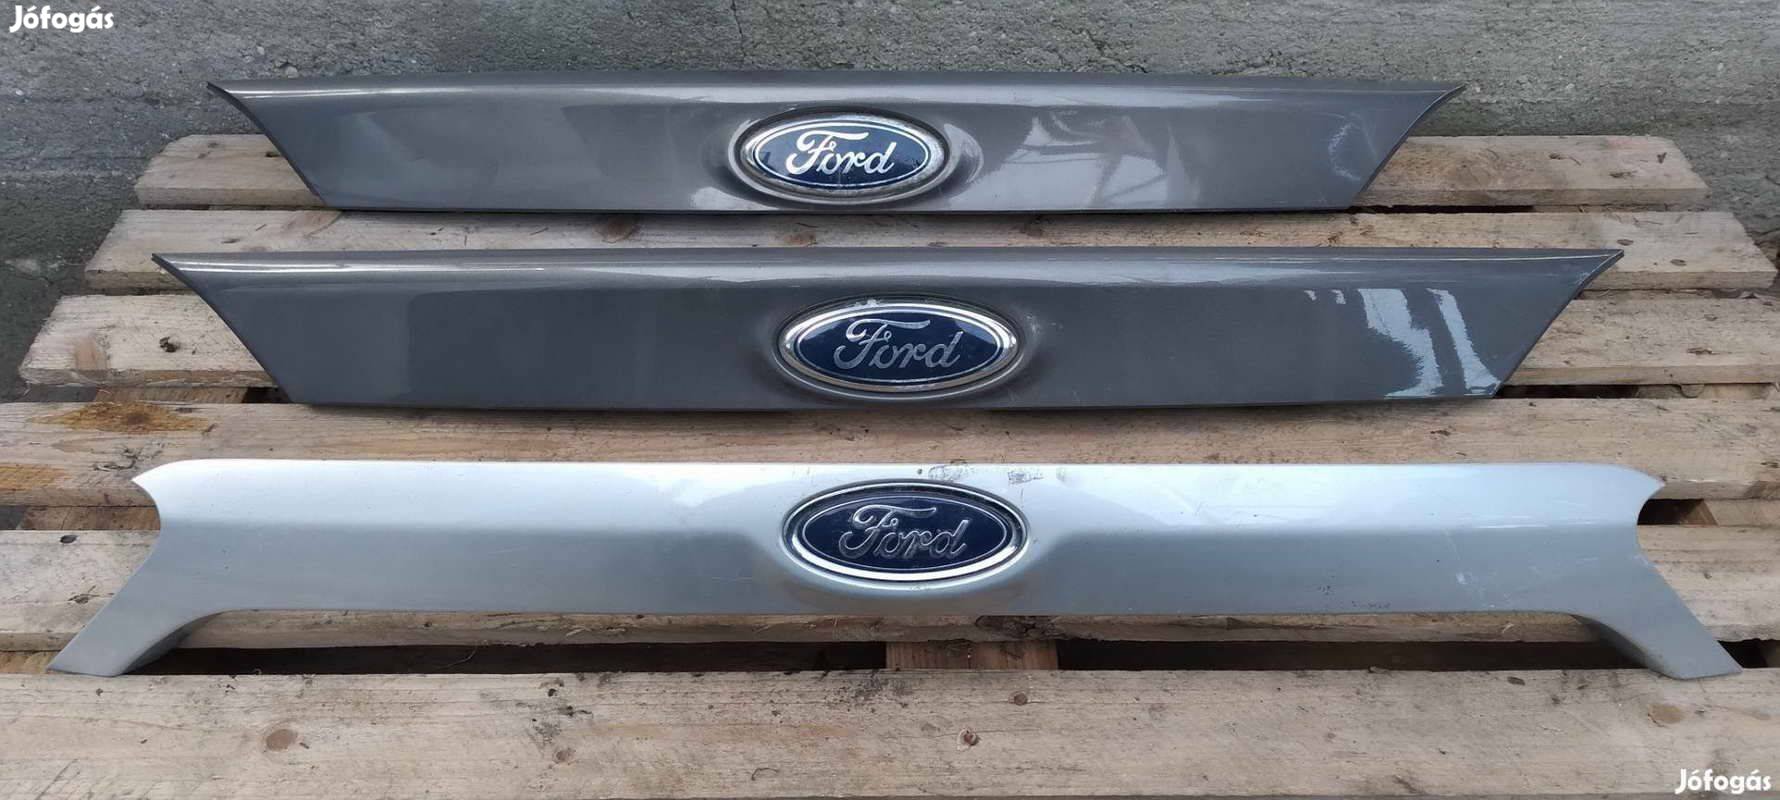 Eladó Ford Focus MK3 csomagtér ajtónyitó gomb 2011 től